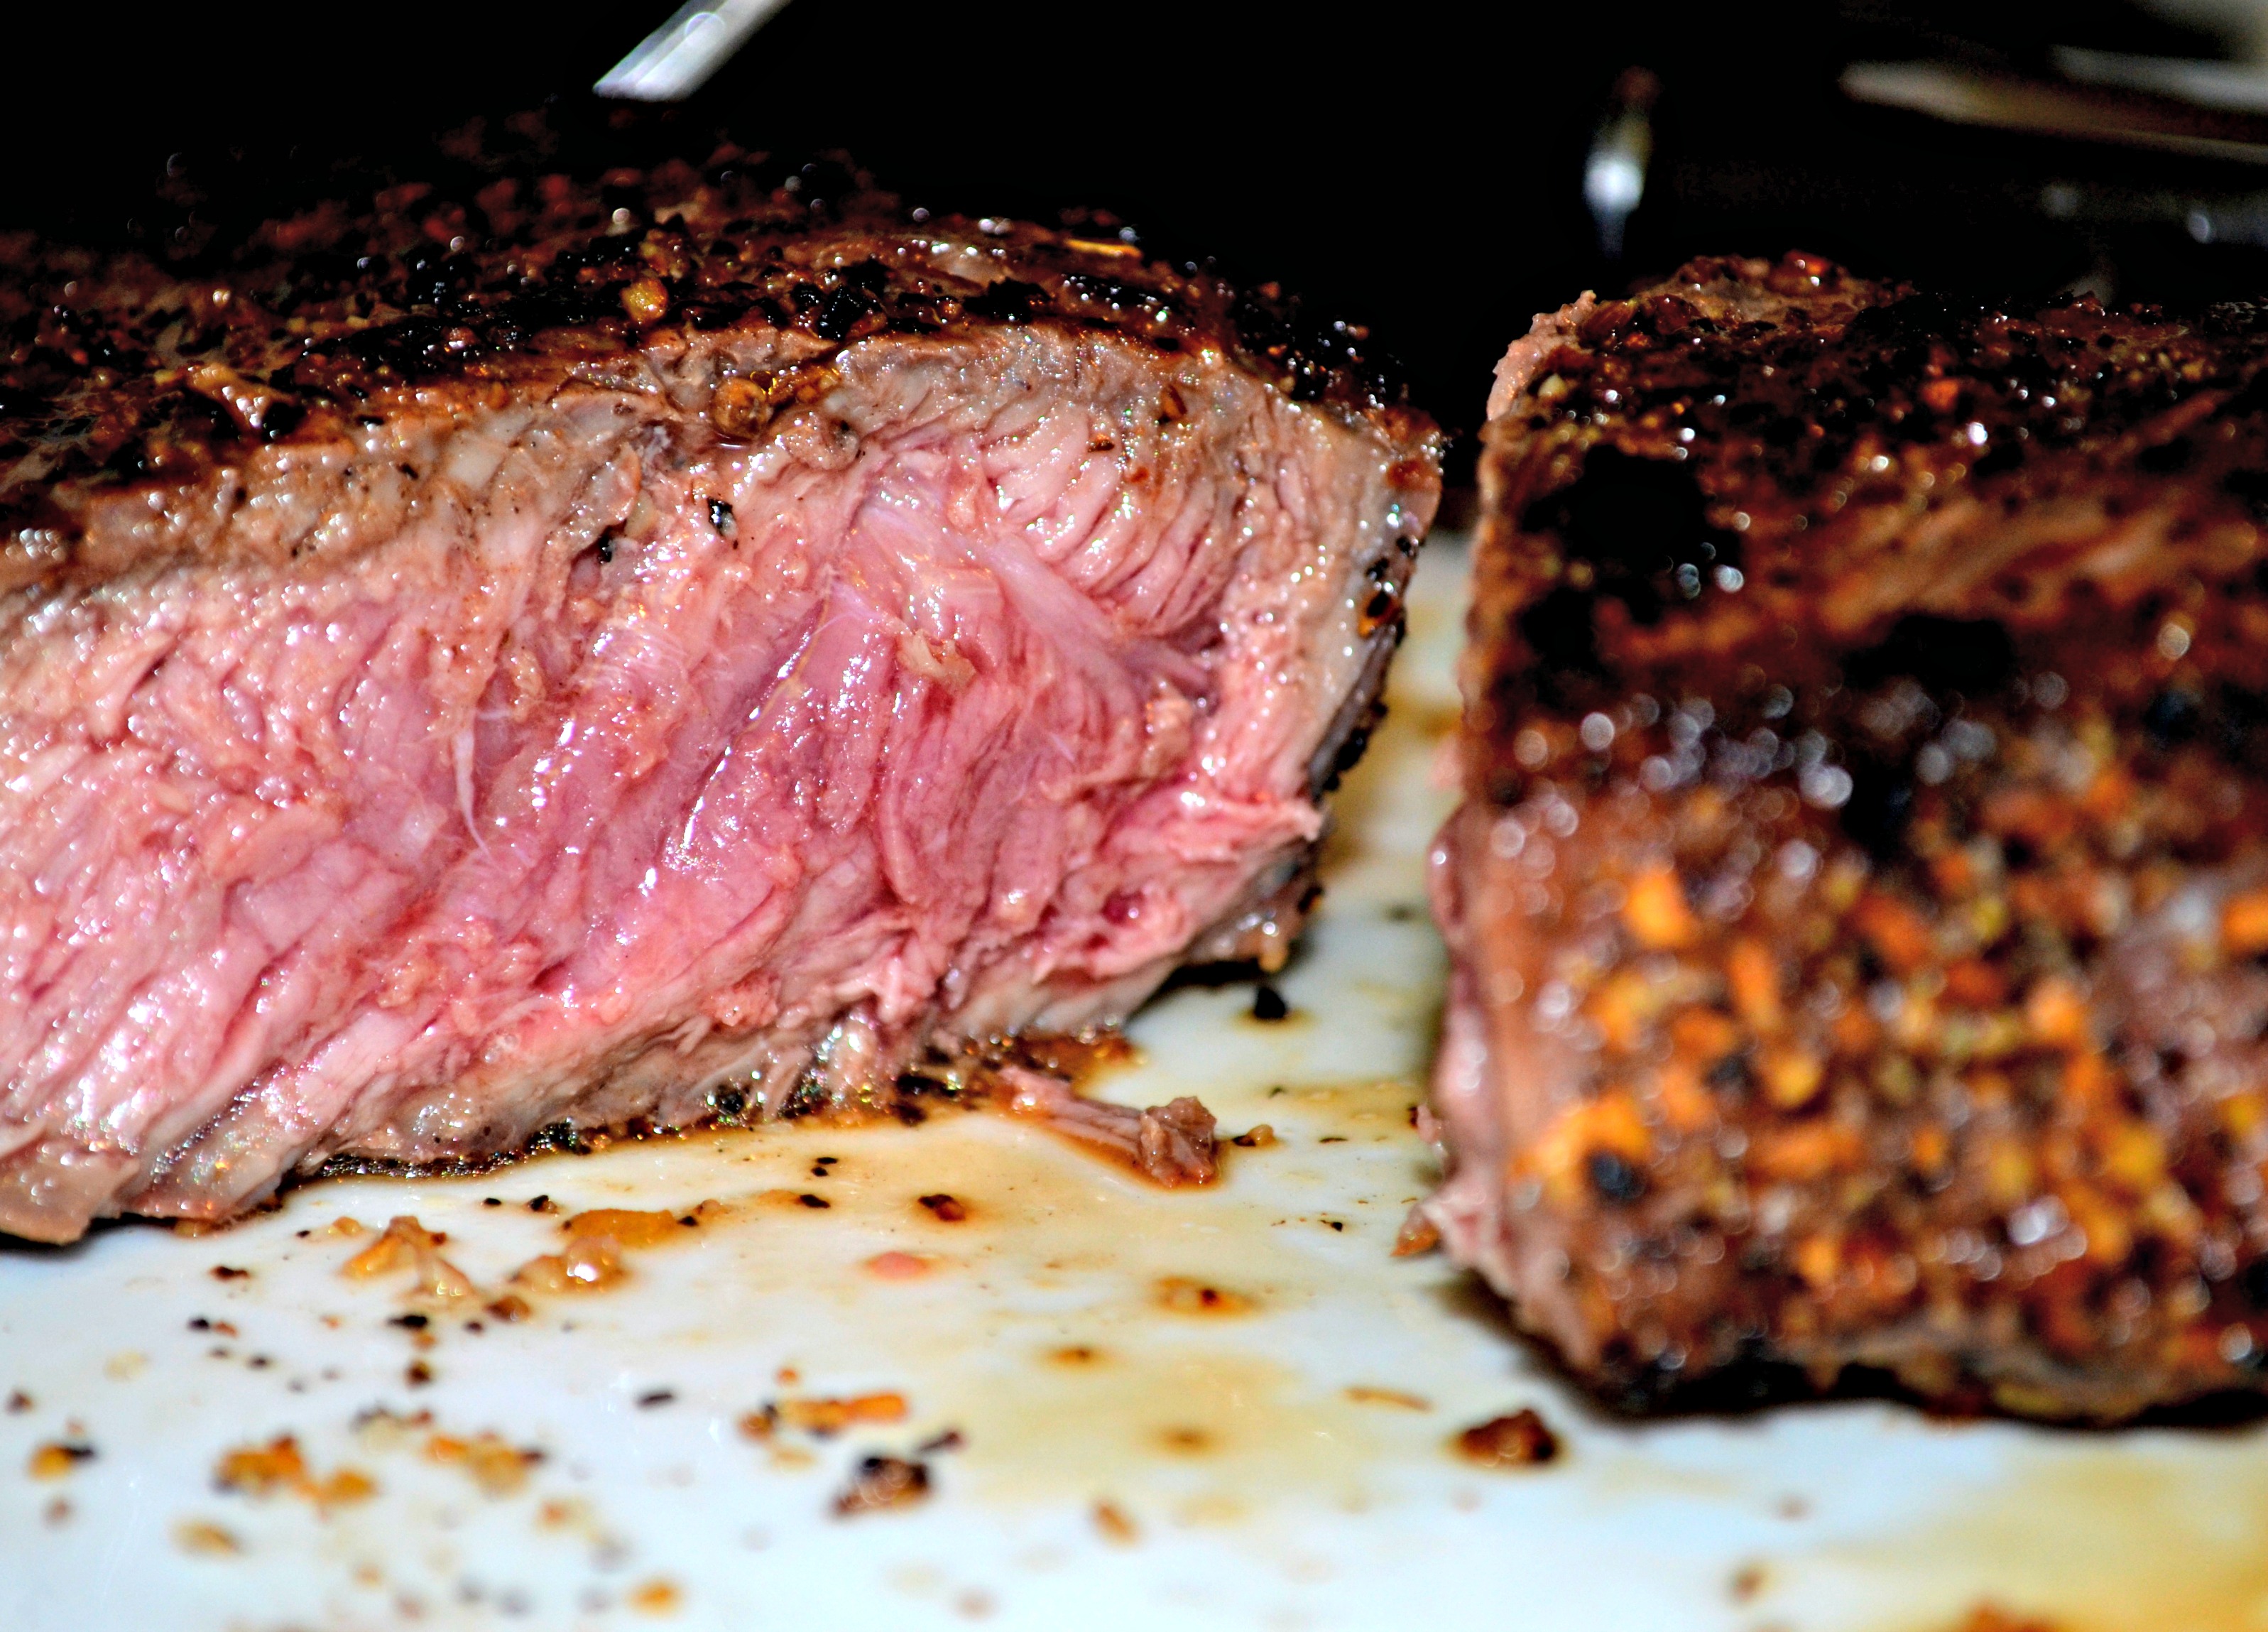 Manhattan strip steak